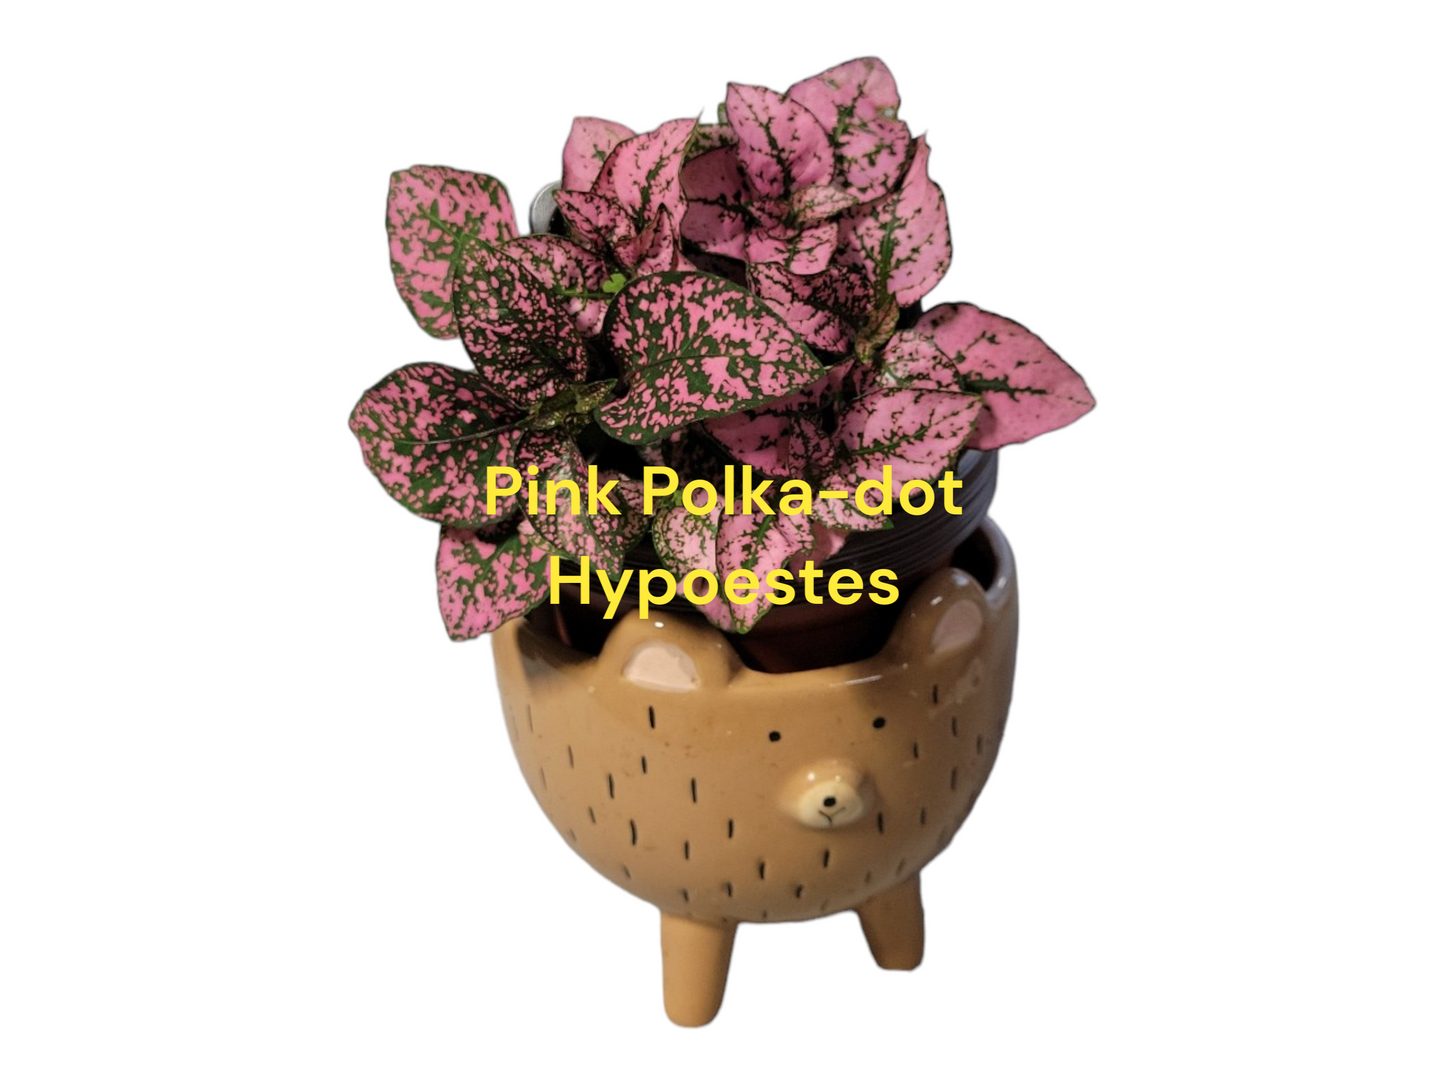 Pink Polka Dot Hypoestes 3 inch pot. Photos b4 Shipping.